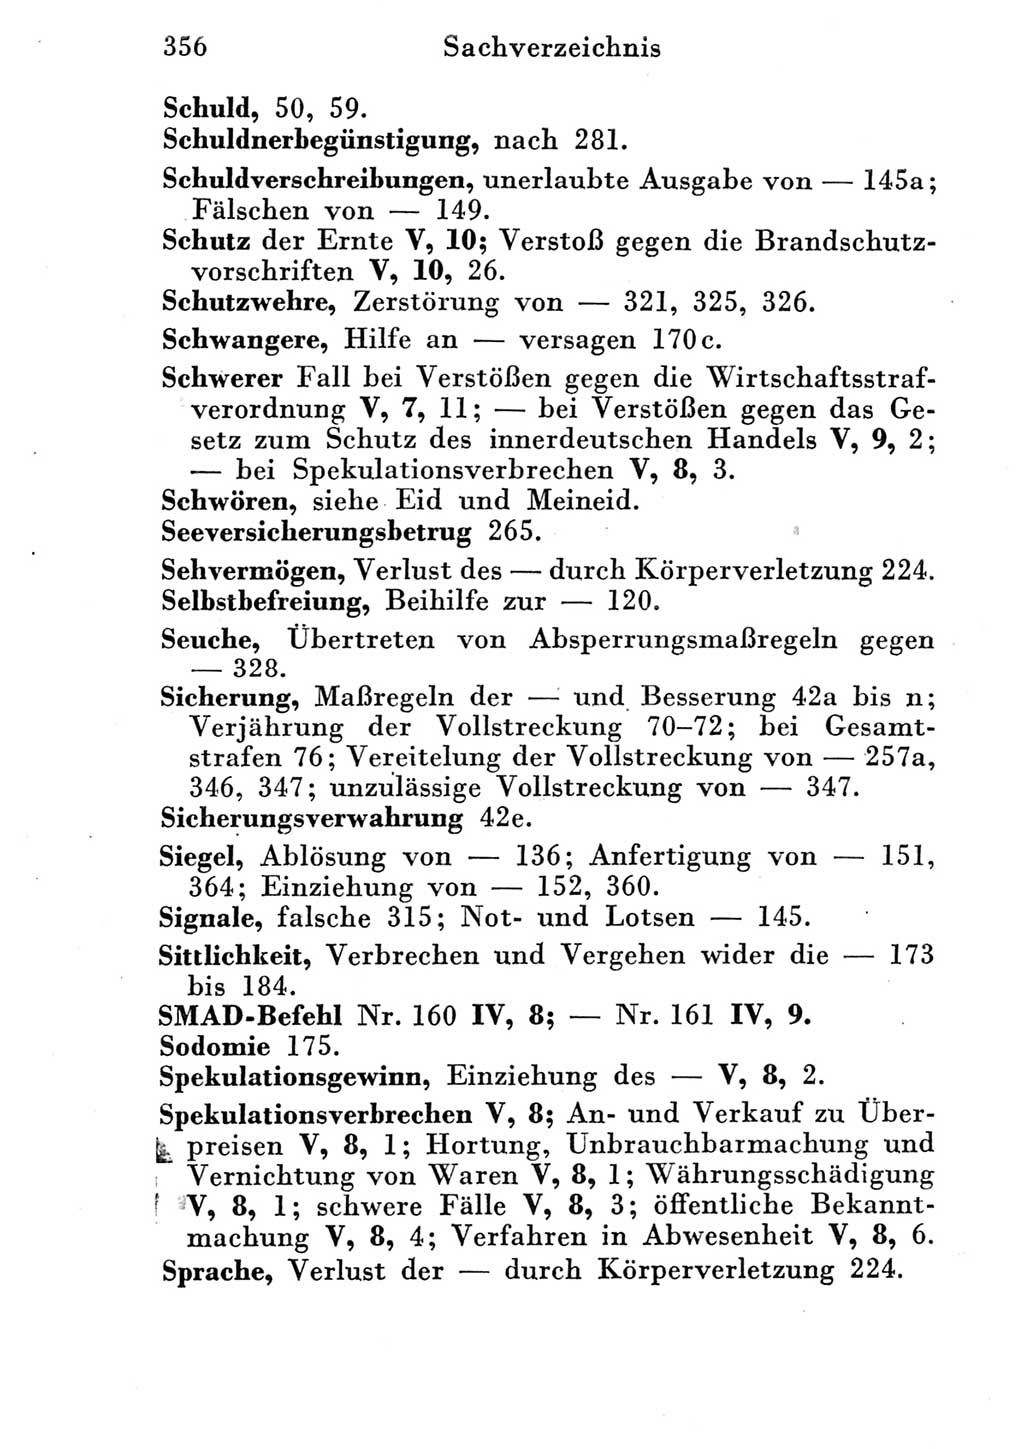 Strafgesetzbuch (StGB) und andere Strafgesetze [Deutsche Demokratische Republik (DDR)] 1951, Seite 356 (StGB Strafges. DDR 1951, S. 356)